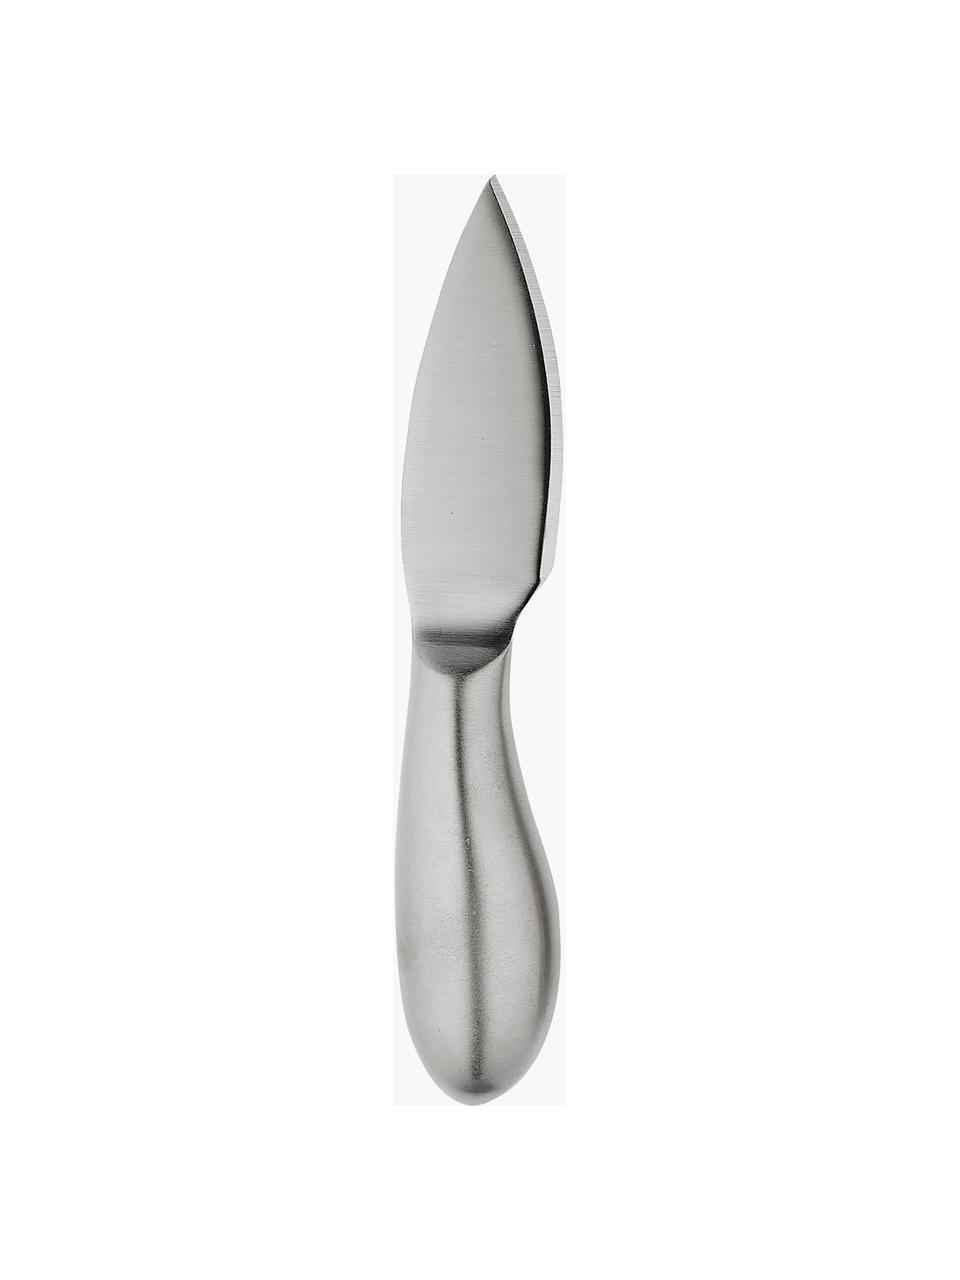 Komplet noży do sera Fromagerie, 3 elem., Stal szlachetna powlekana

Stal szlachetna jest materiałem trwałym, odpornym na korozję oraz posiada właściwości antybakteryjne, Odcienie srebrnego, matowy, D 17 cm